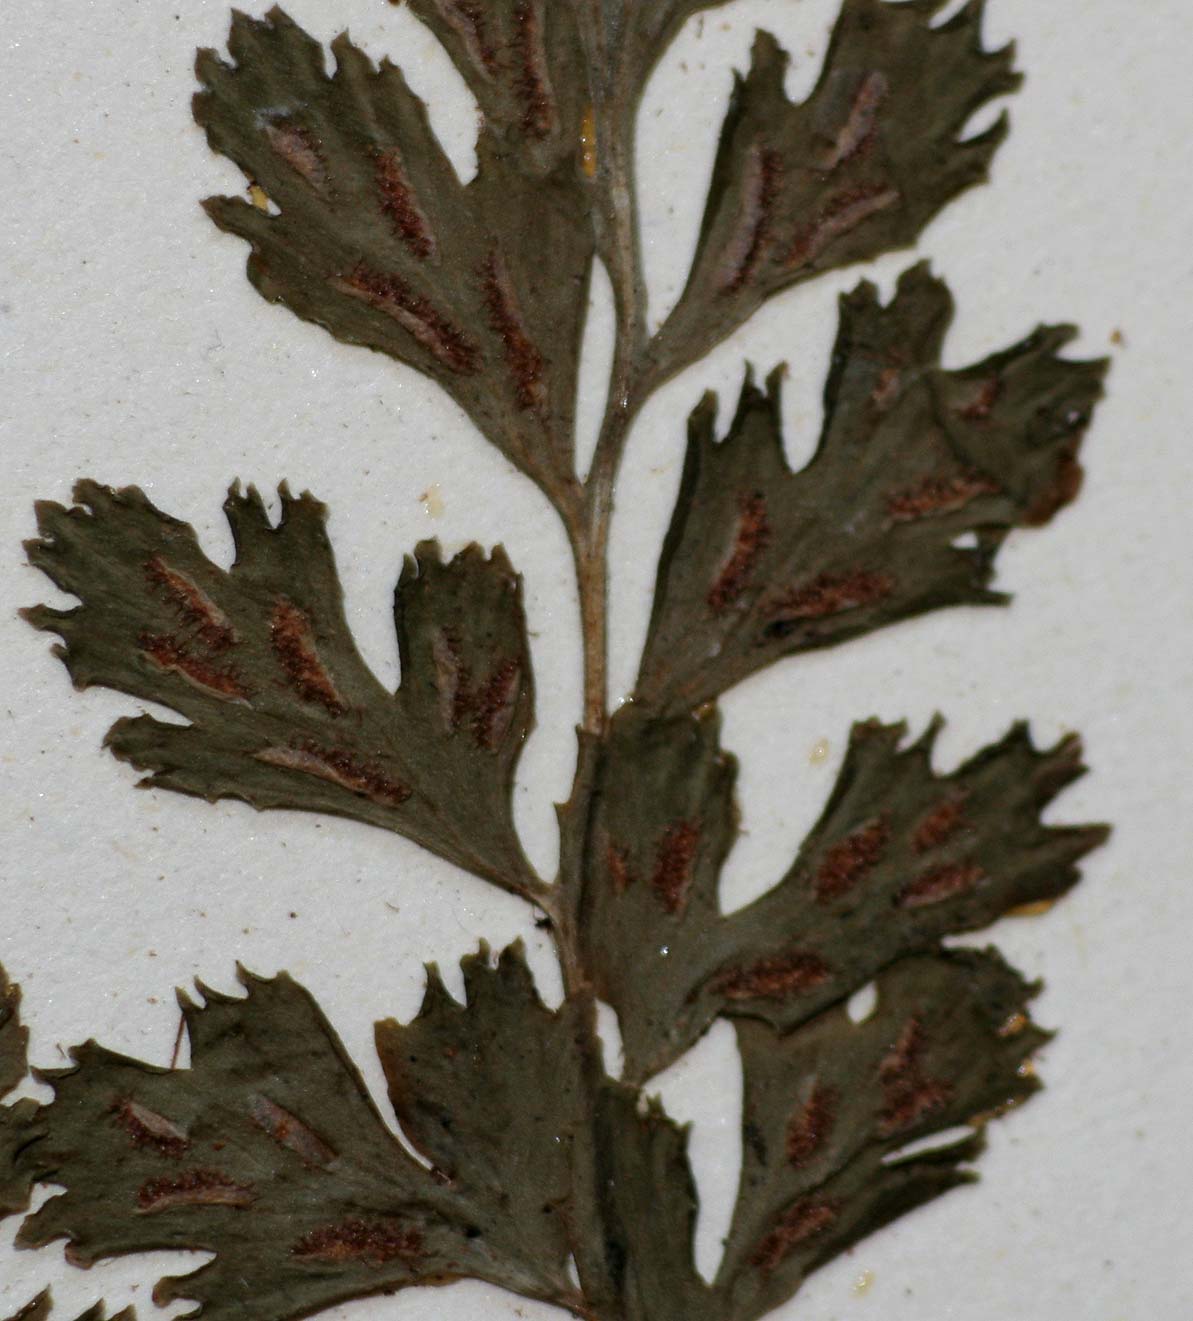 Asplenium varians subsp. fimbriatum